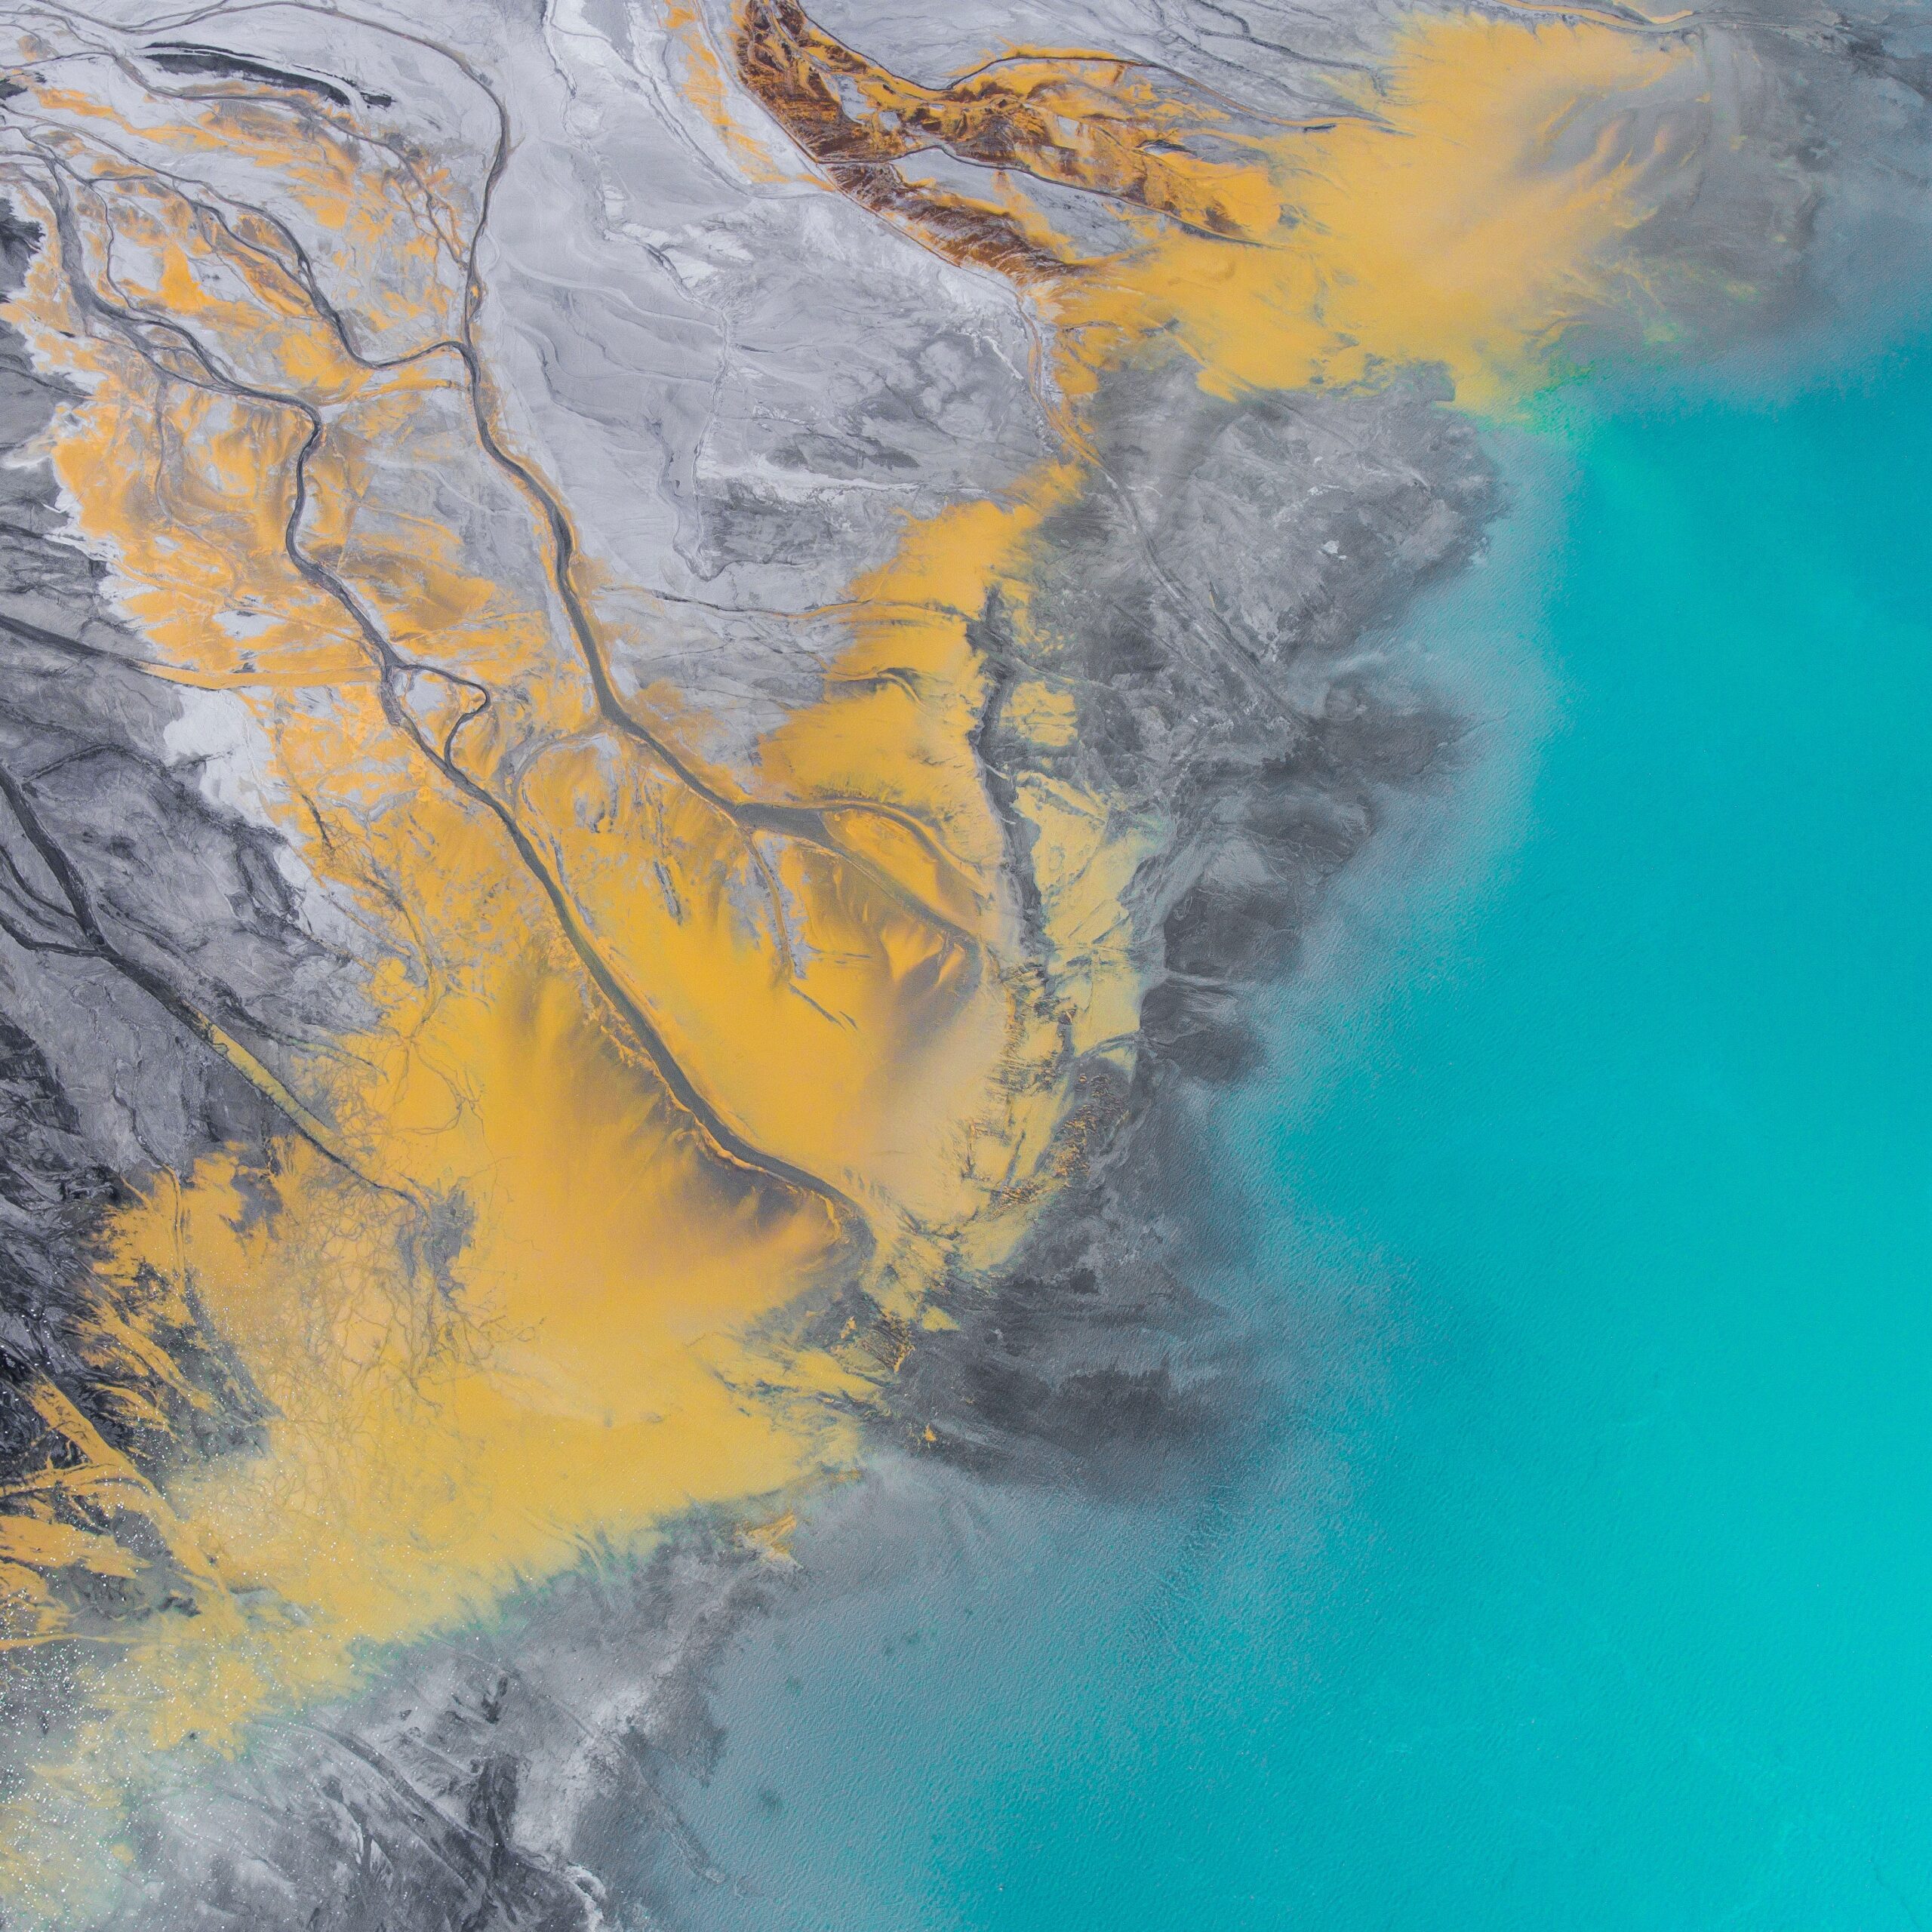 A multi-colored liquid oil spill